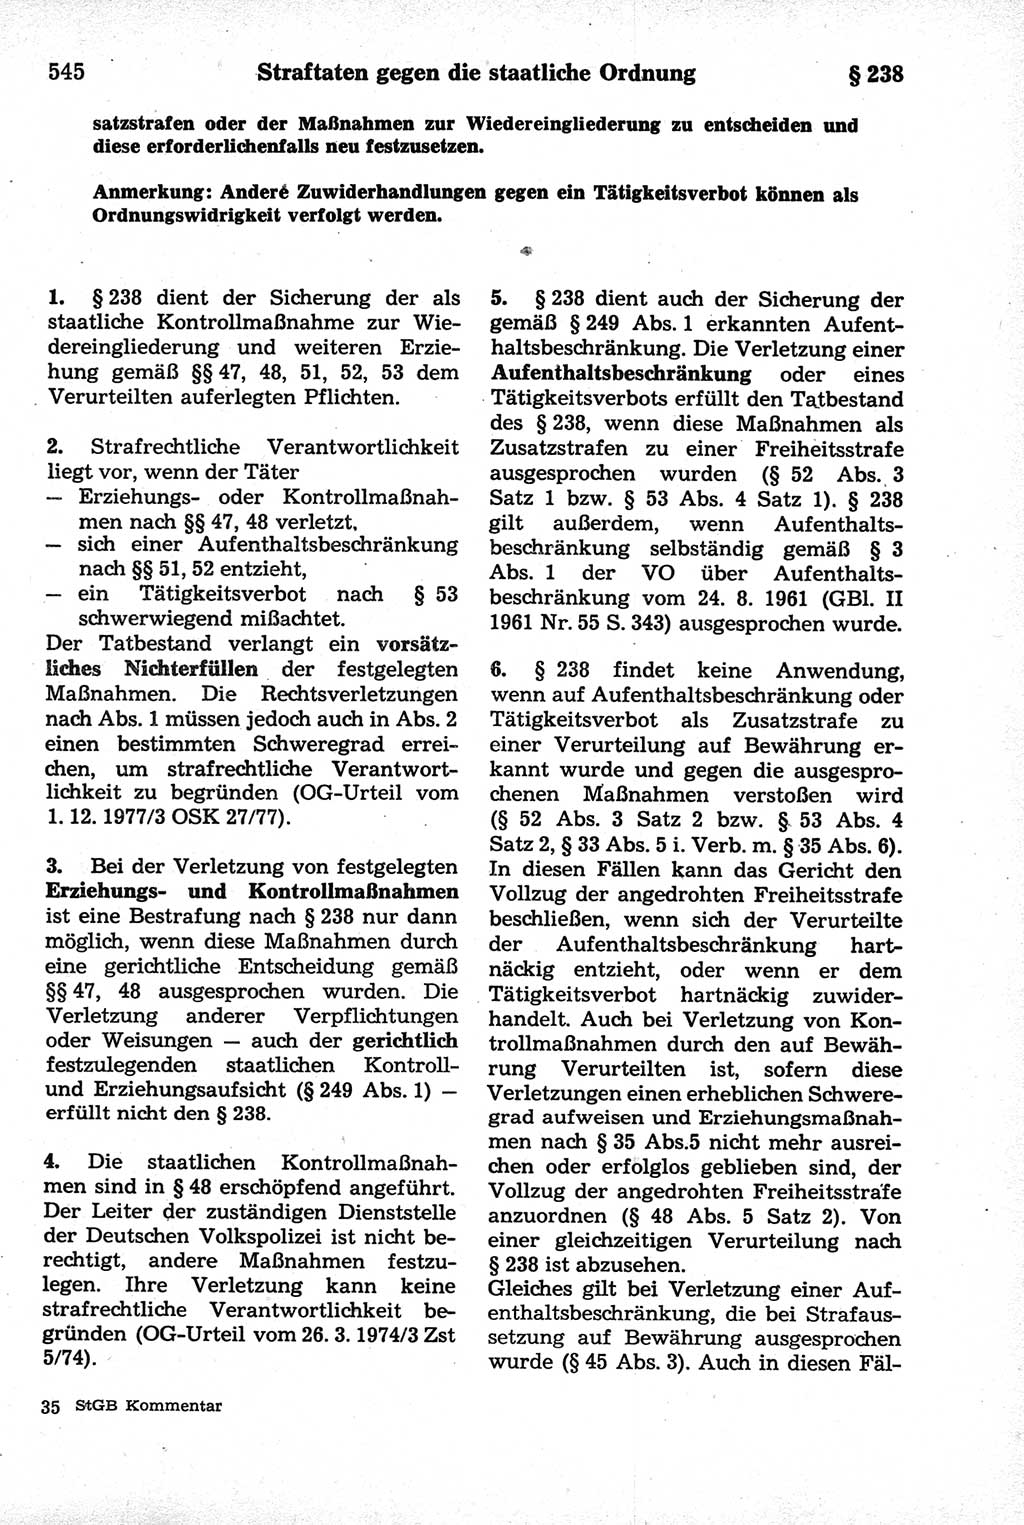 Strafrecht der Deutschen Demokratischen Republik (DDR), Kommentar zum Strafgesetzbuch (StGB) 1981, Seite 545 (Strafr. DDR Komm. StGB 1981, S. 545)